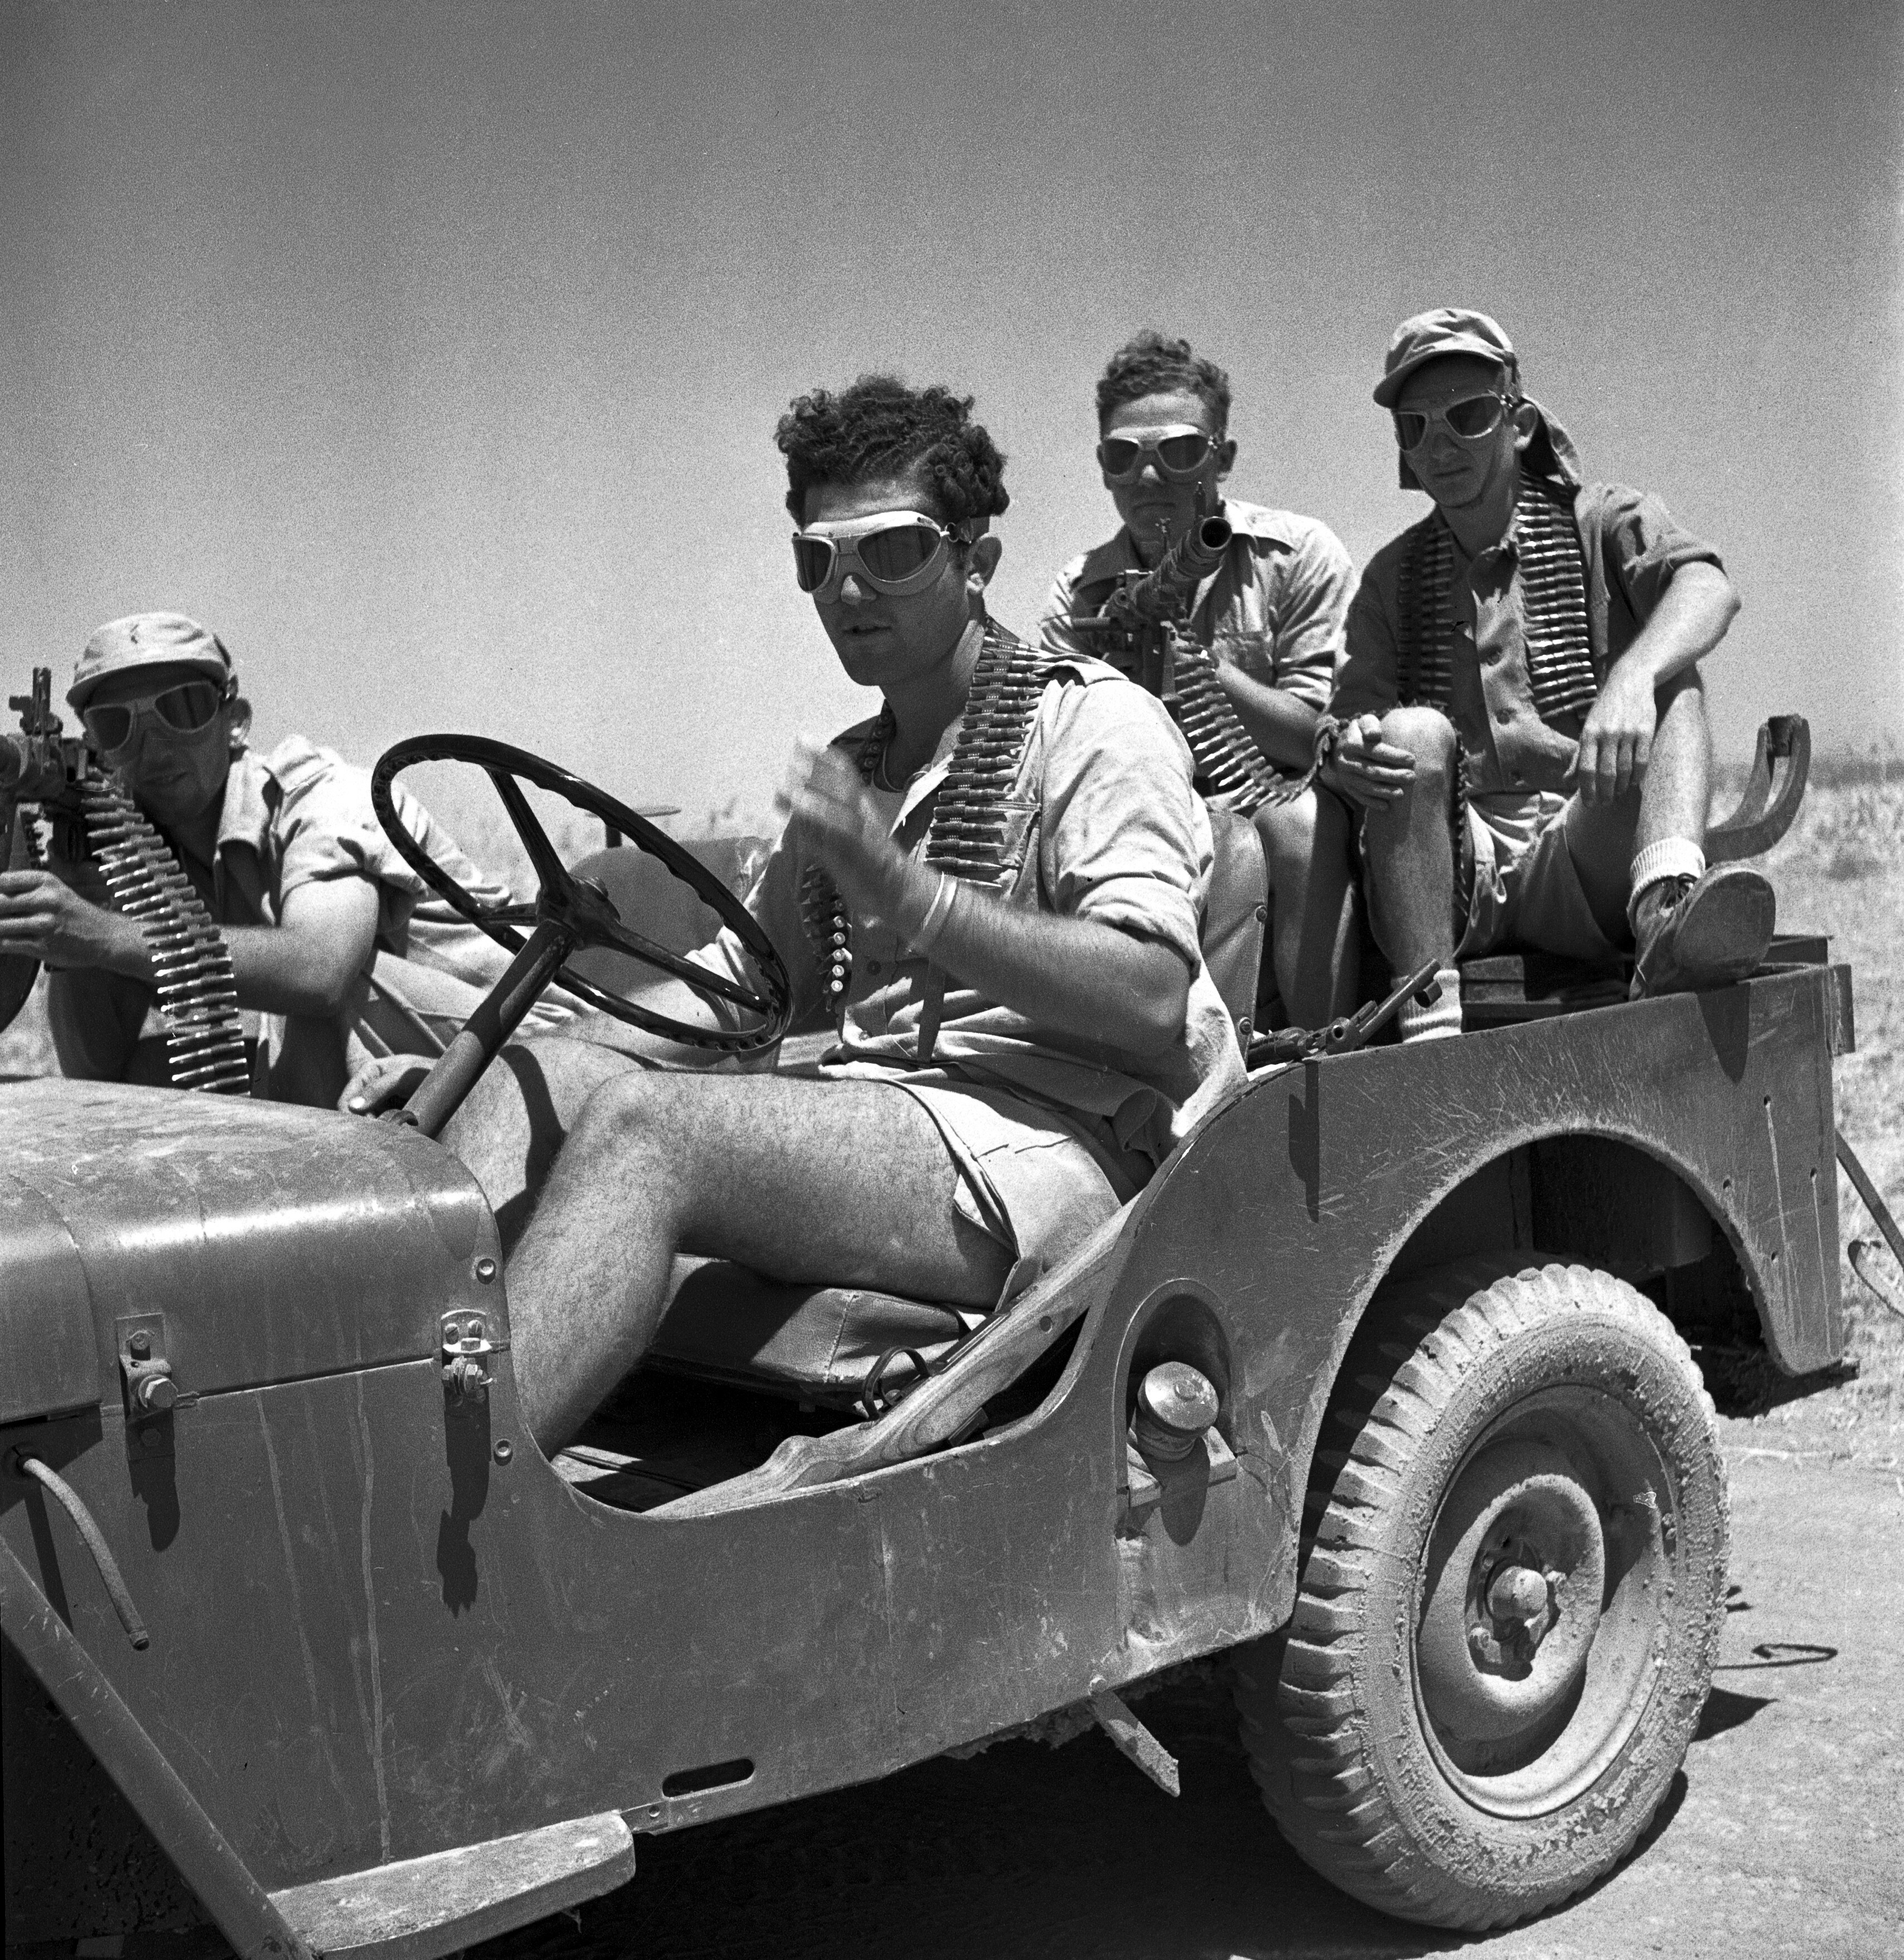 Esercito israeliano. Un’unità motorizzata di “Palmach” nel Negev durante la prima guerra arabo-israeliana. 1948. Israele. Foto n. 349223. © Courtesy UN Photo/LM